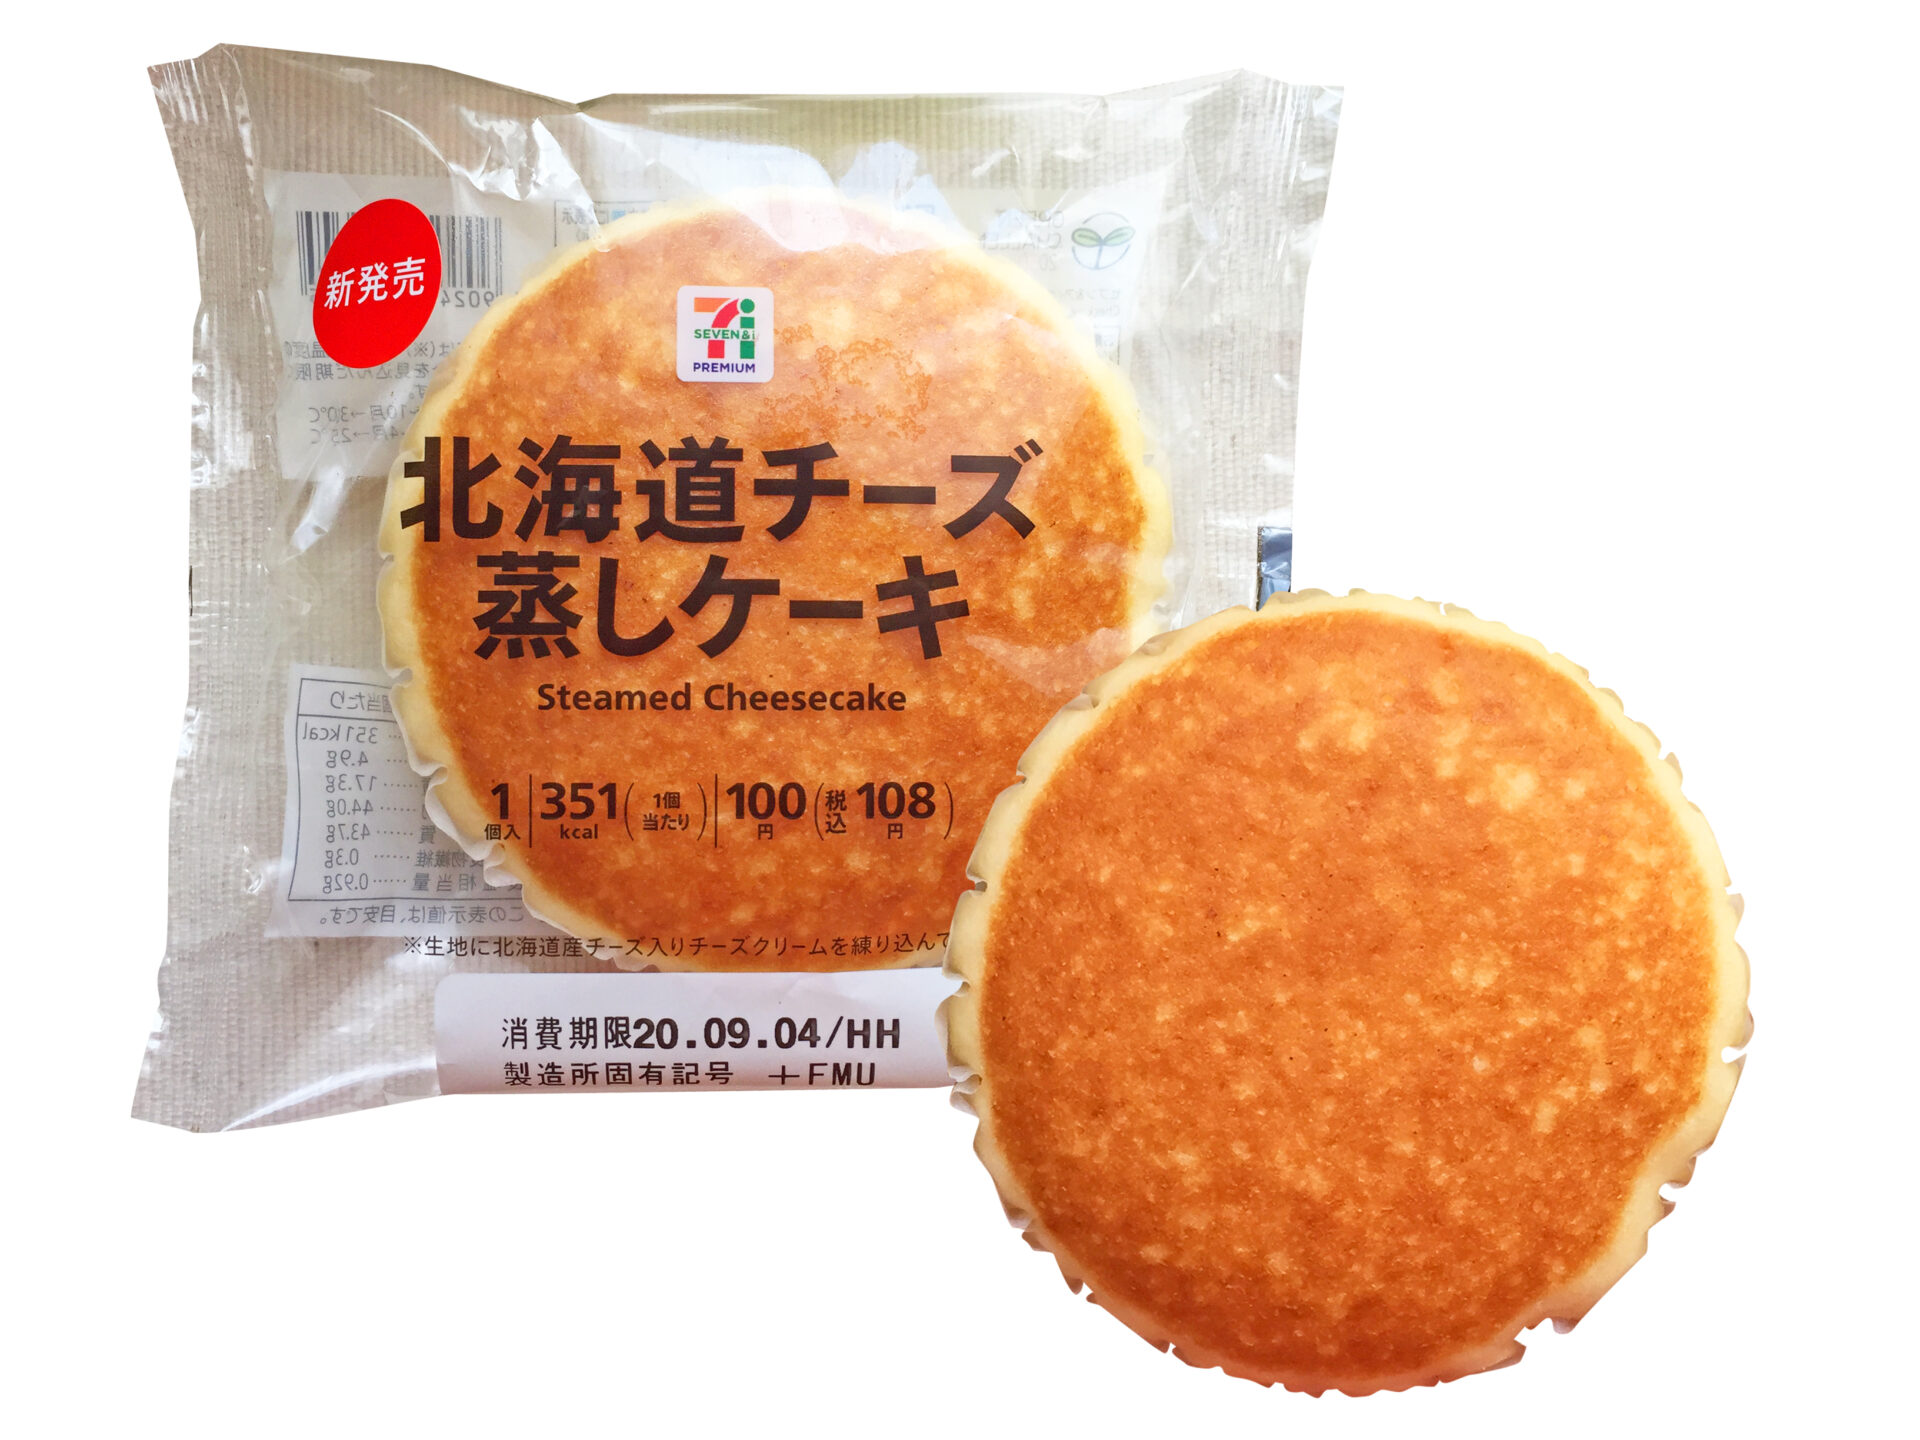 セブン−イレブン『7P北海道チーズ 蒸しケーキ』